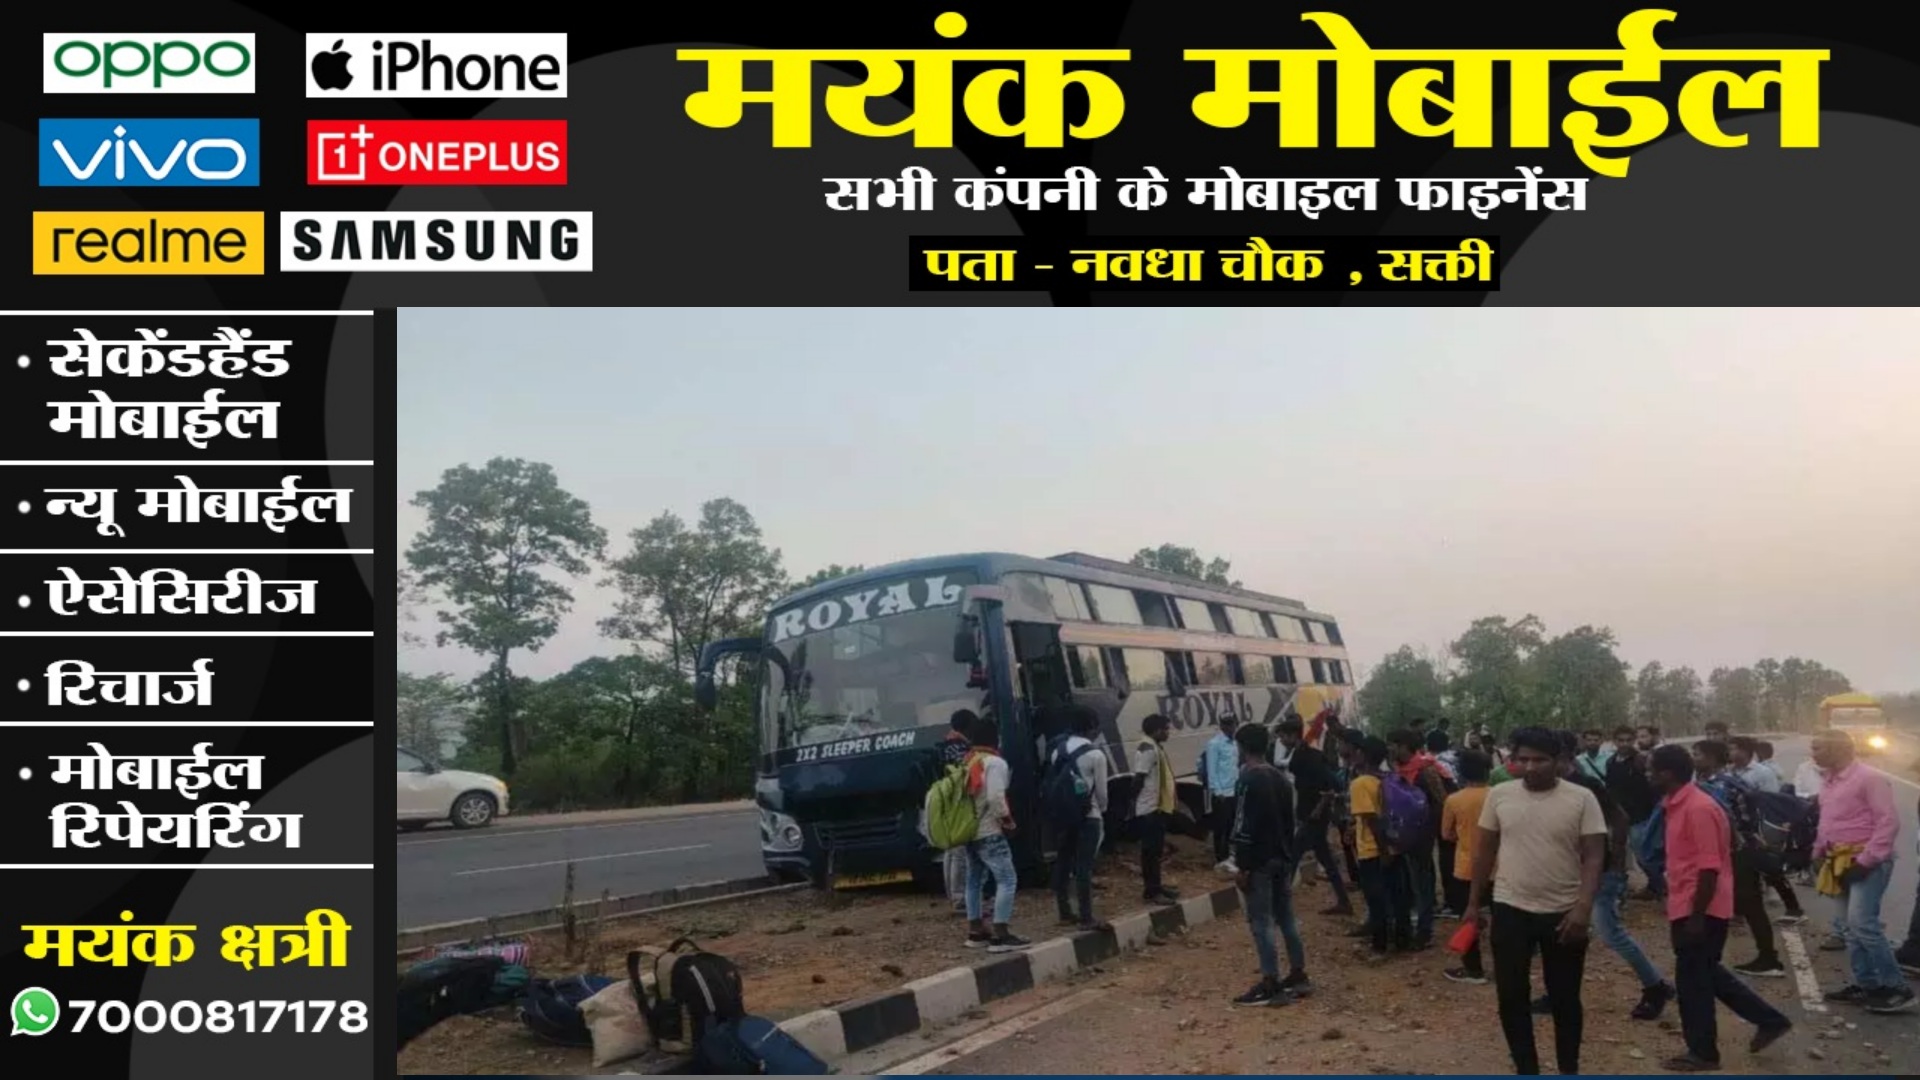 छत्तीसगढ़ - अम्बिकापुर से आ रही रॉयल बस हादसे का शिकार , यात्रियों में मची अफरातफरी